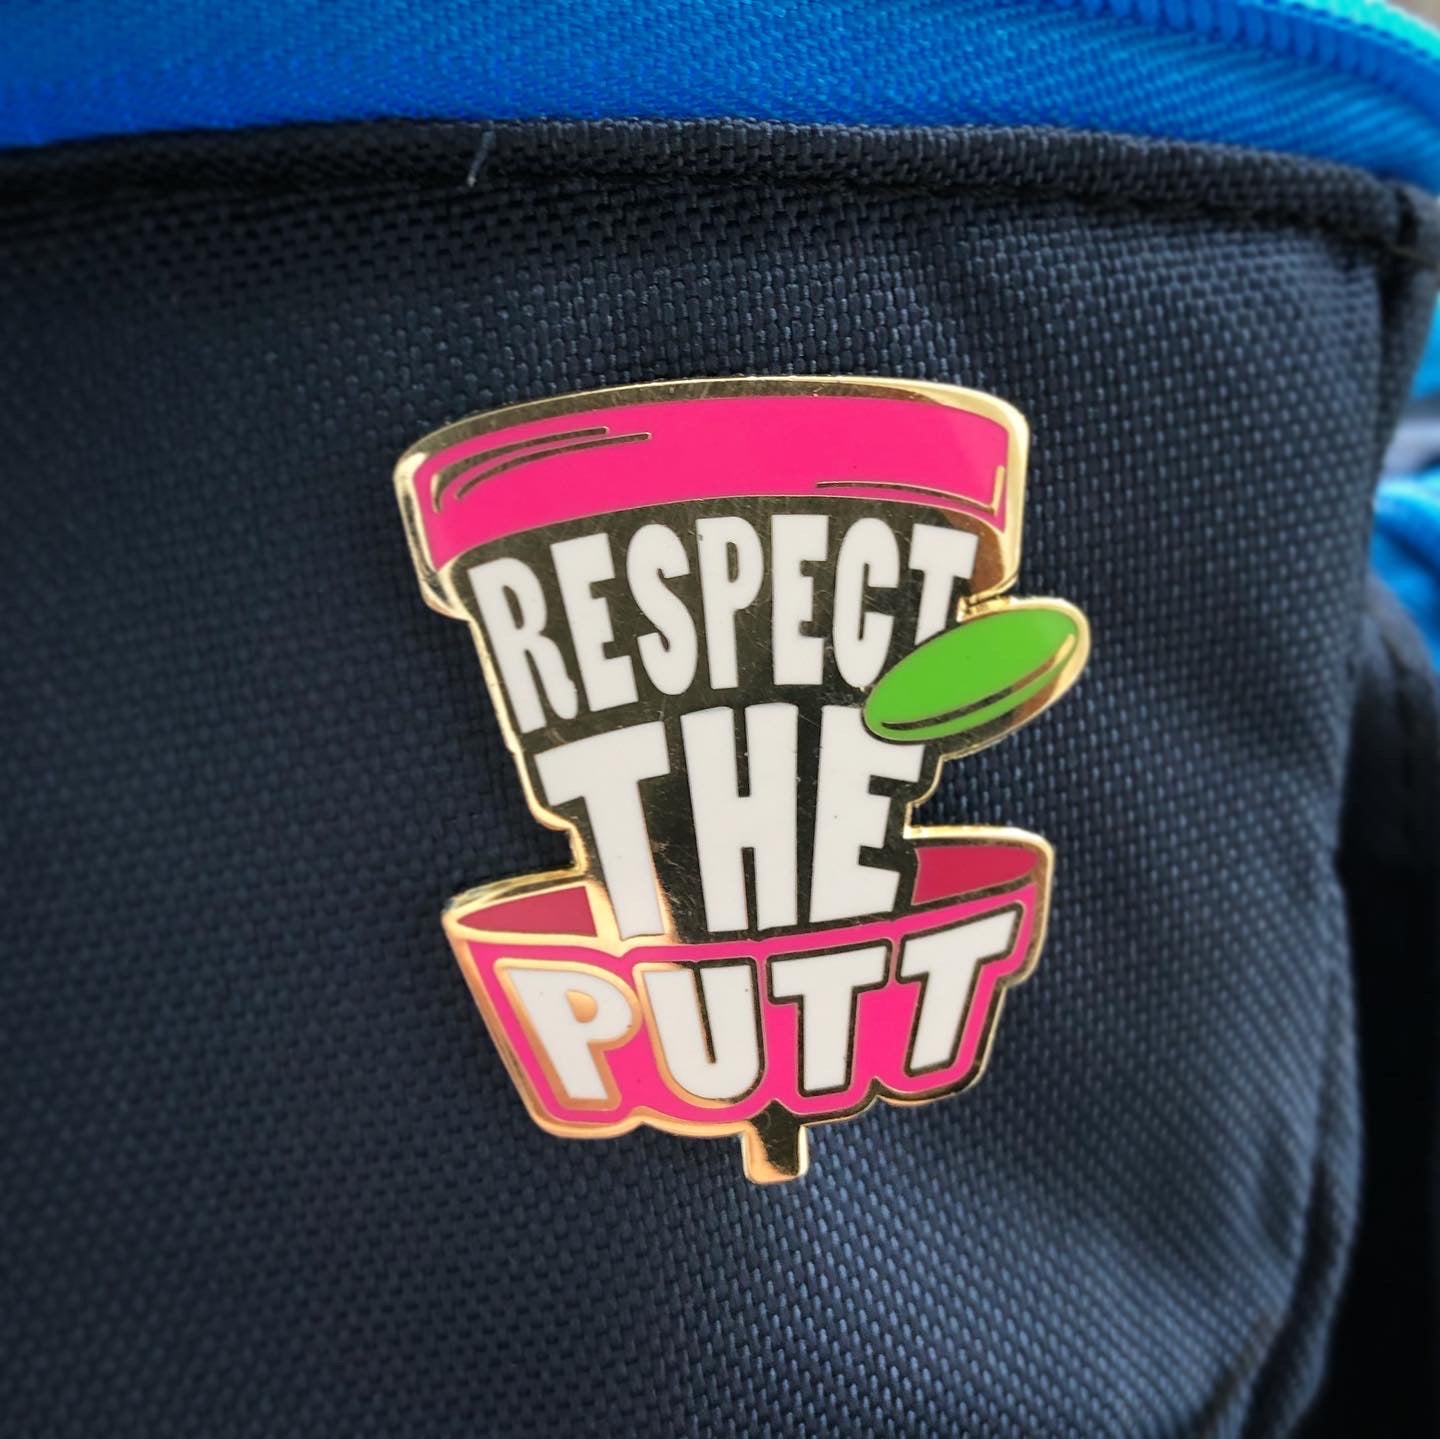 Respect The Putt Disc Golf Pin